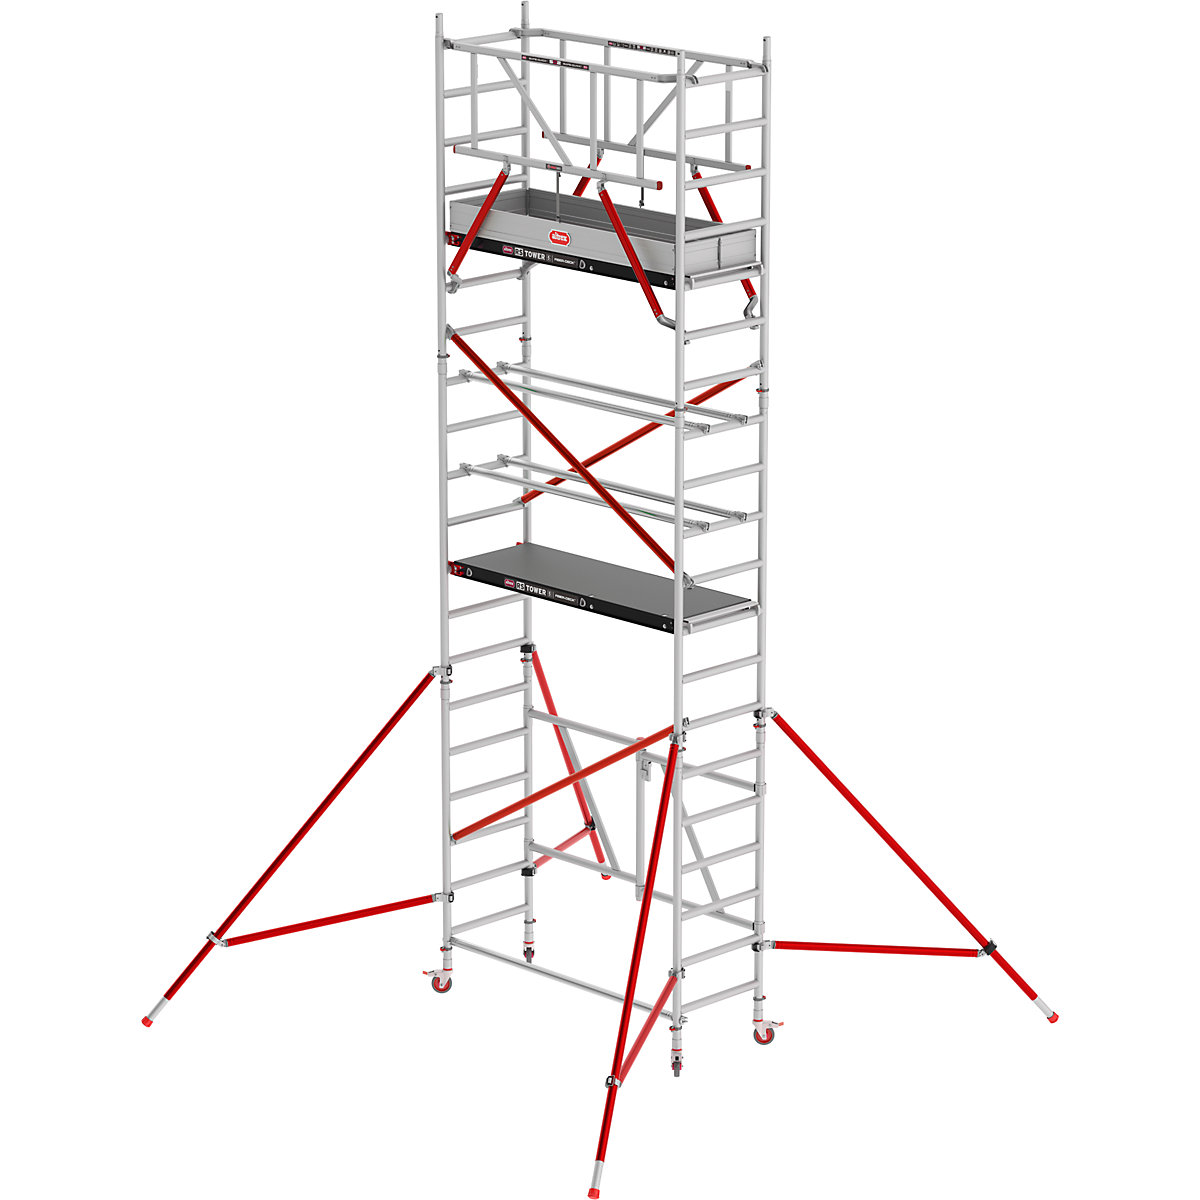 Zimmergerüst RS TOWER 54 Altrex, mit Holzplattform, Arbeitshöhe 6,80 m